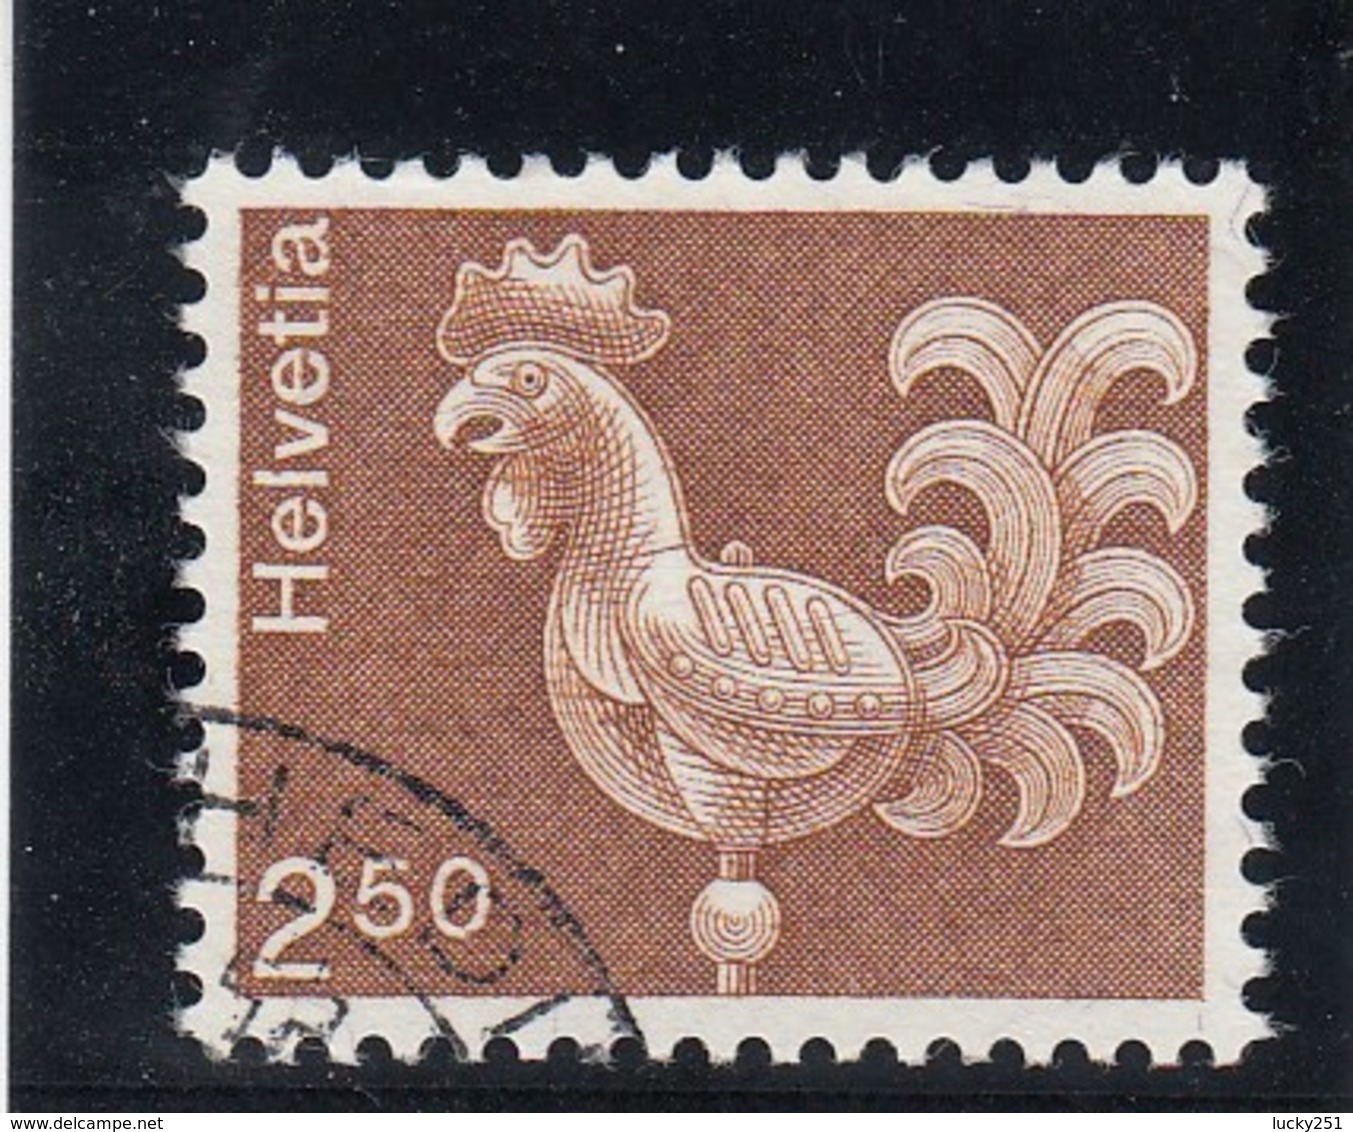 Suisse - 1975 - Oblit. - N° YT 991 - Coq - Gebruikt